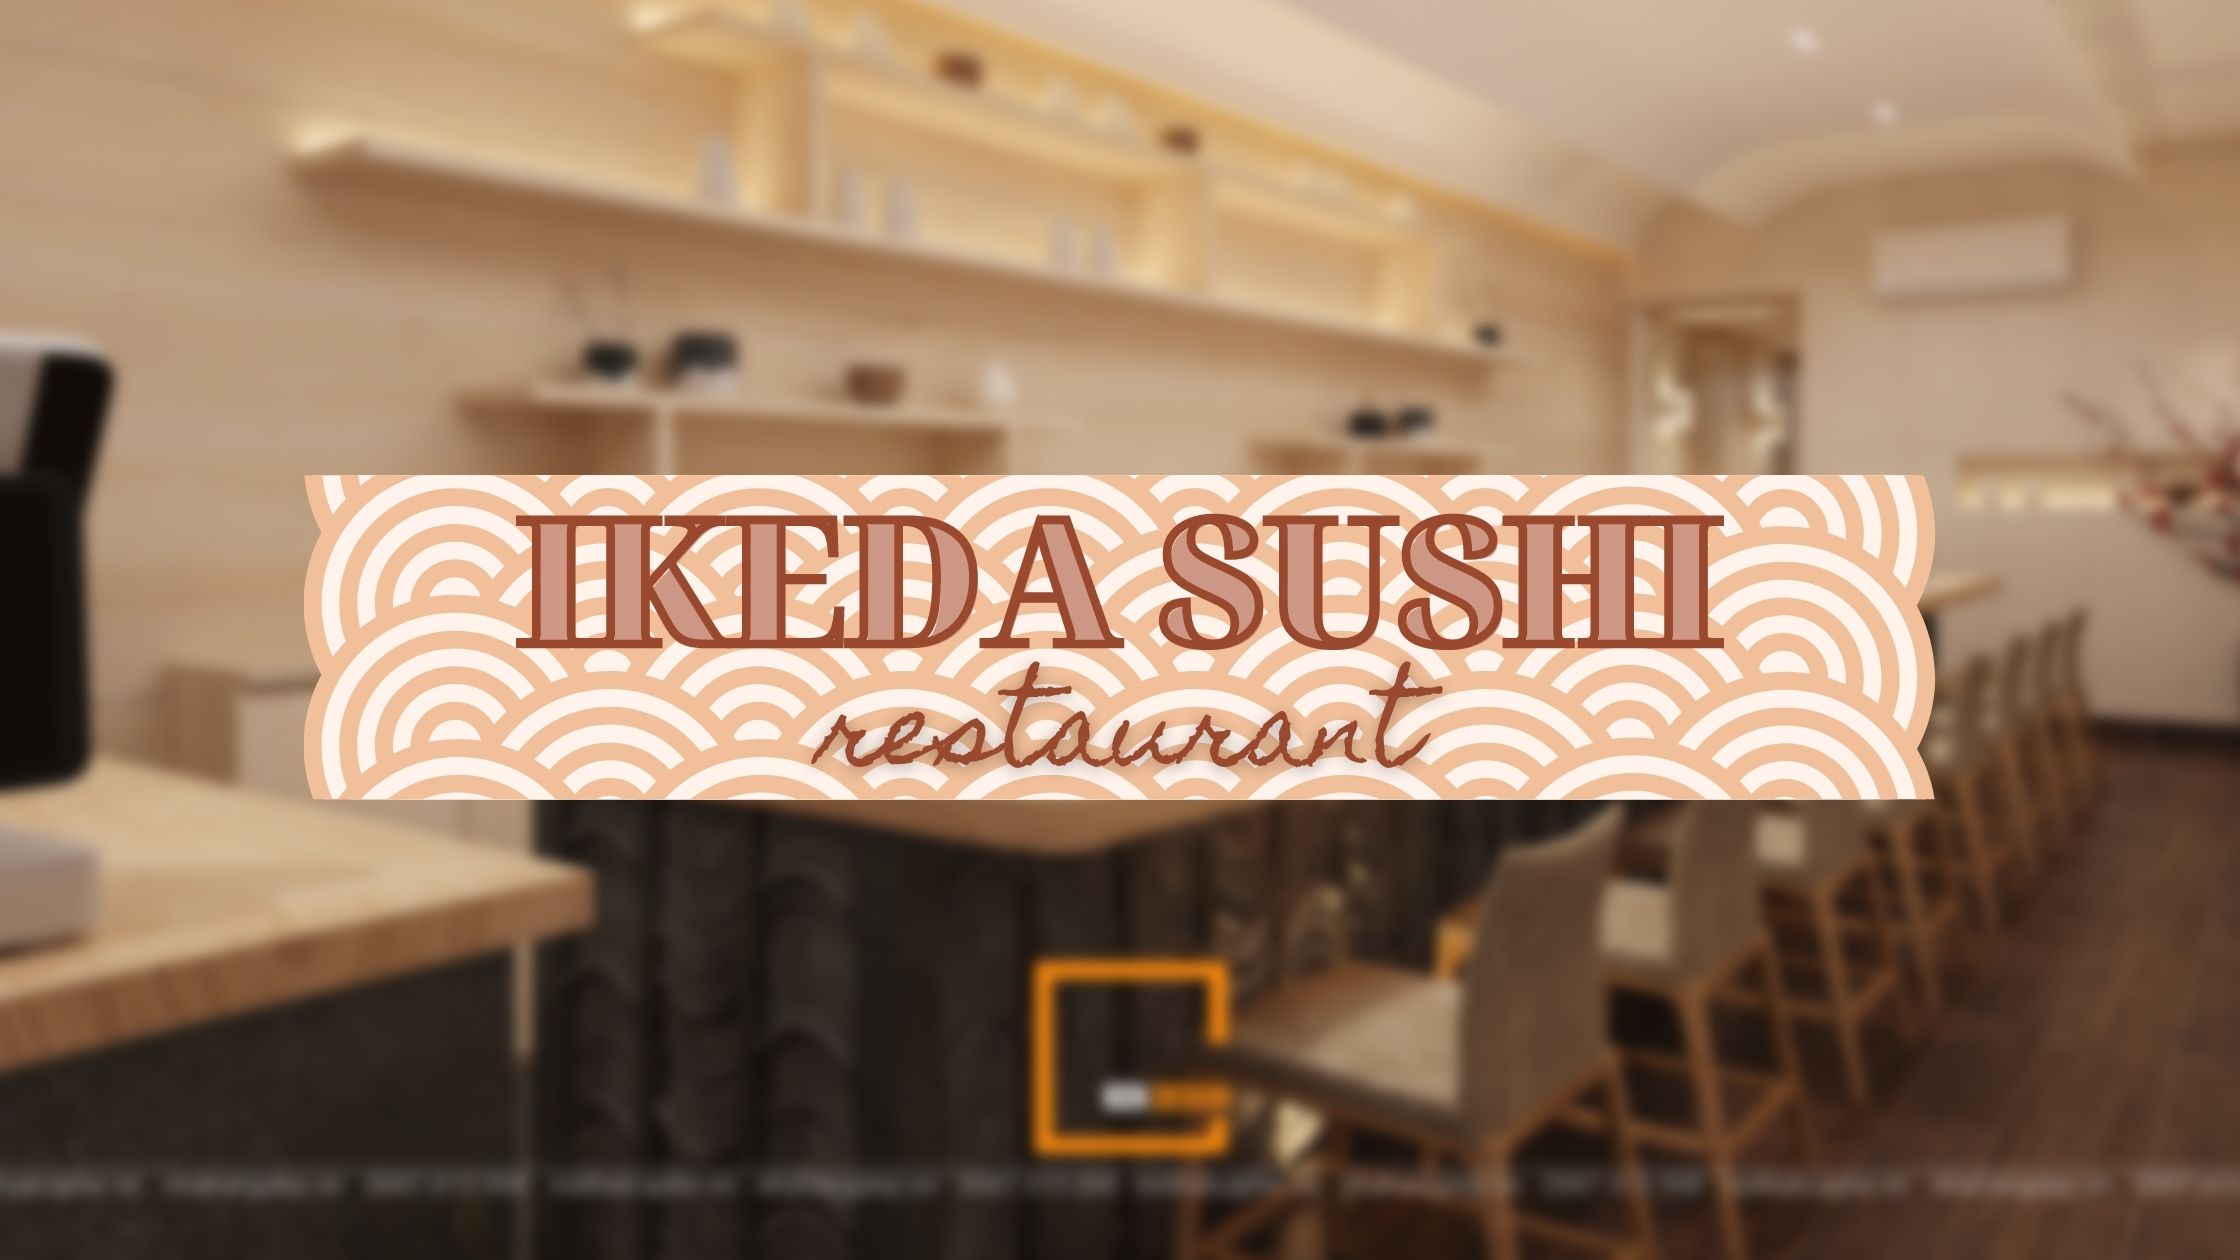 Chiêm ngưỡng phong cách wabi sabi độc đáo trong thiết kế nhà hàng sushi IKEDA